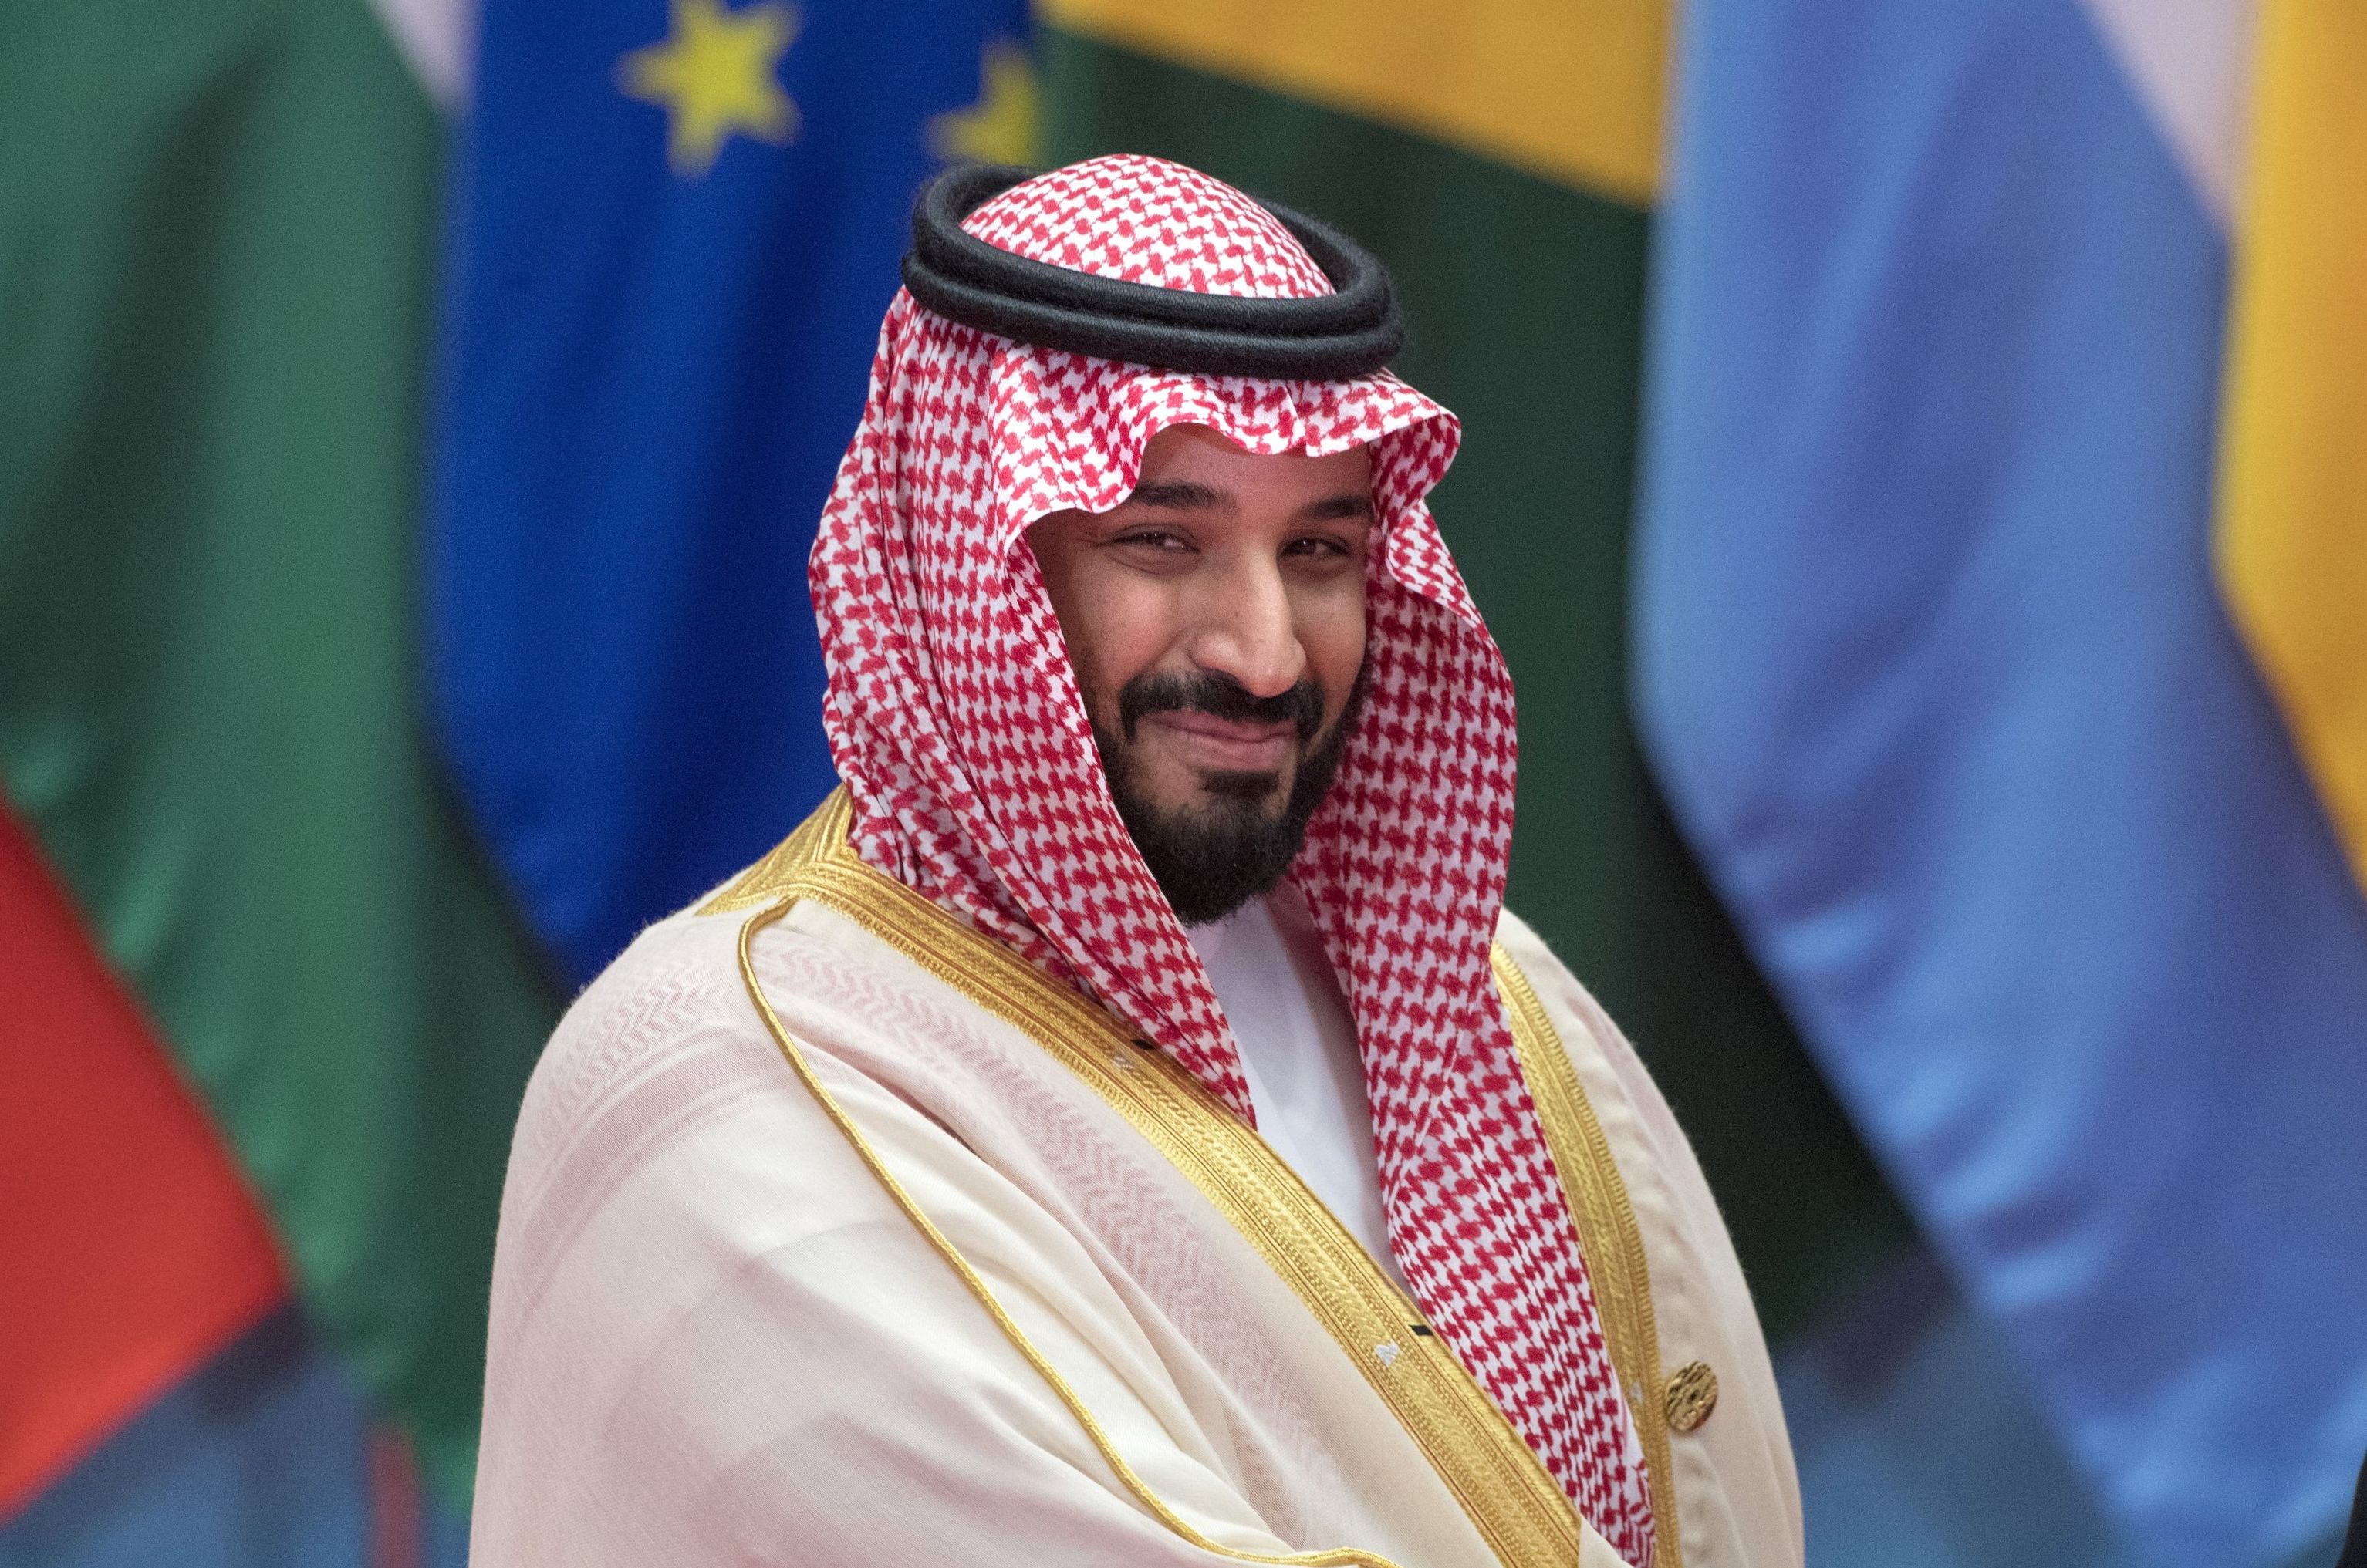 Заместитель наследного принца королевства Саудовская Аравия и министр обороны Мухаммад бин Салман Аль Сауд